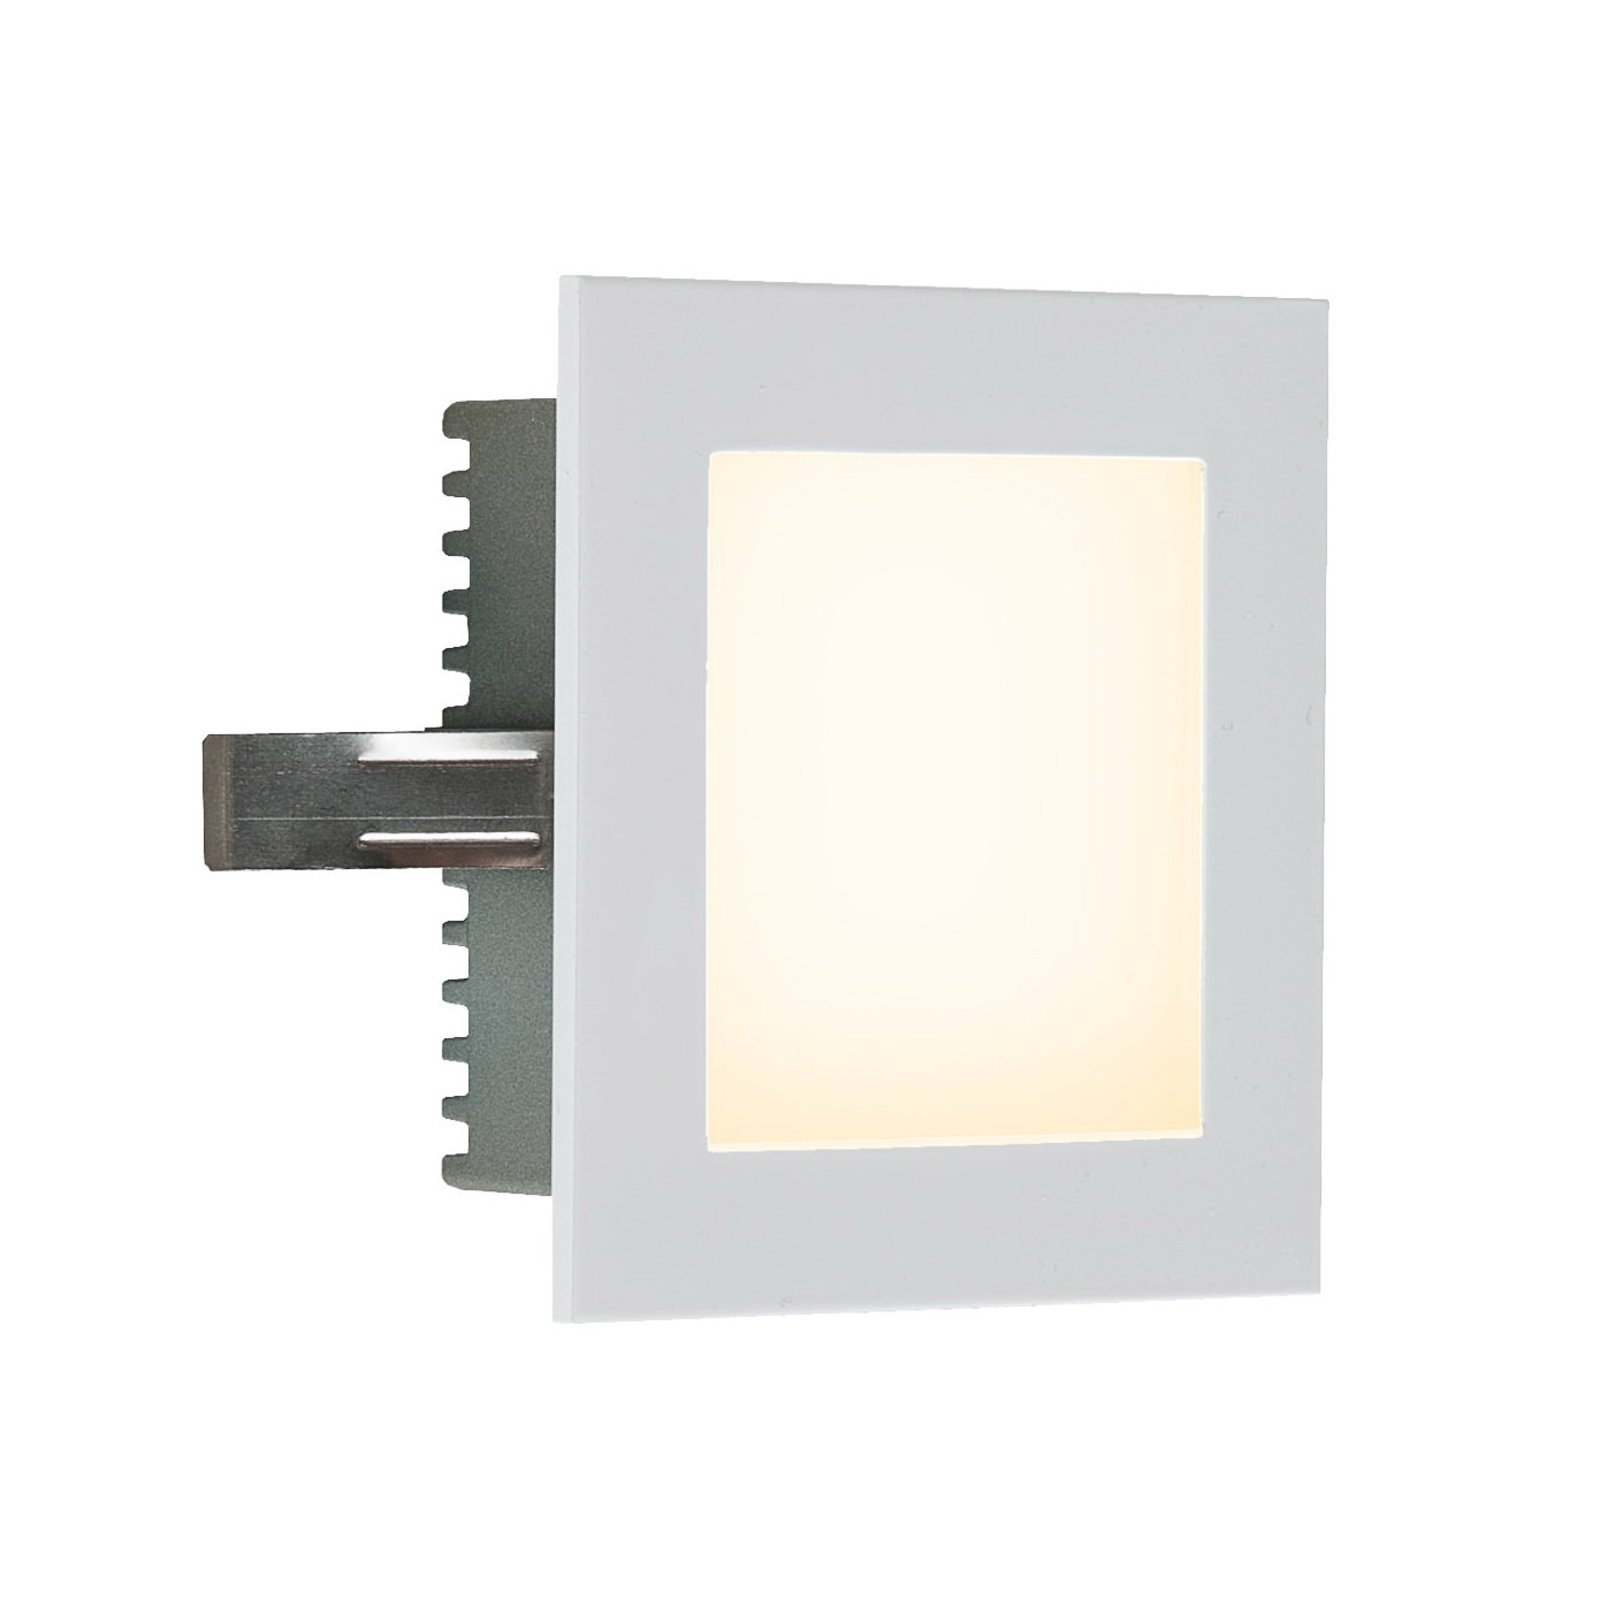 EVN P2180 LED recessed wall light 3,000 K white